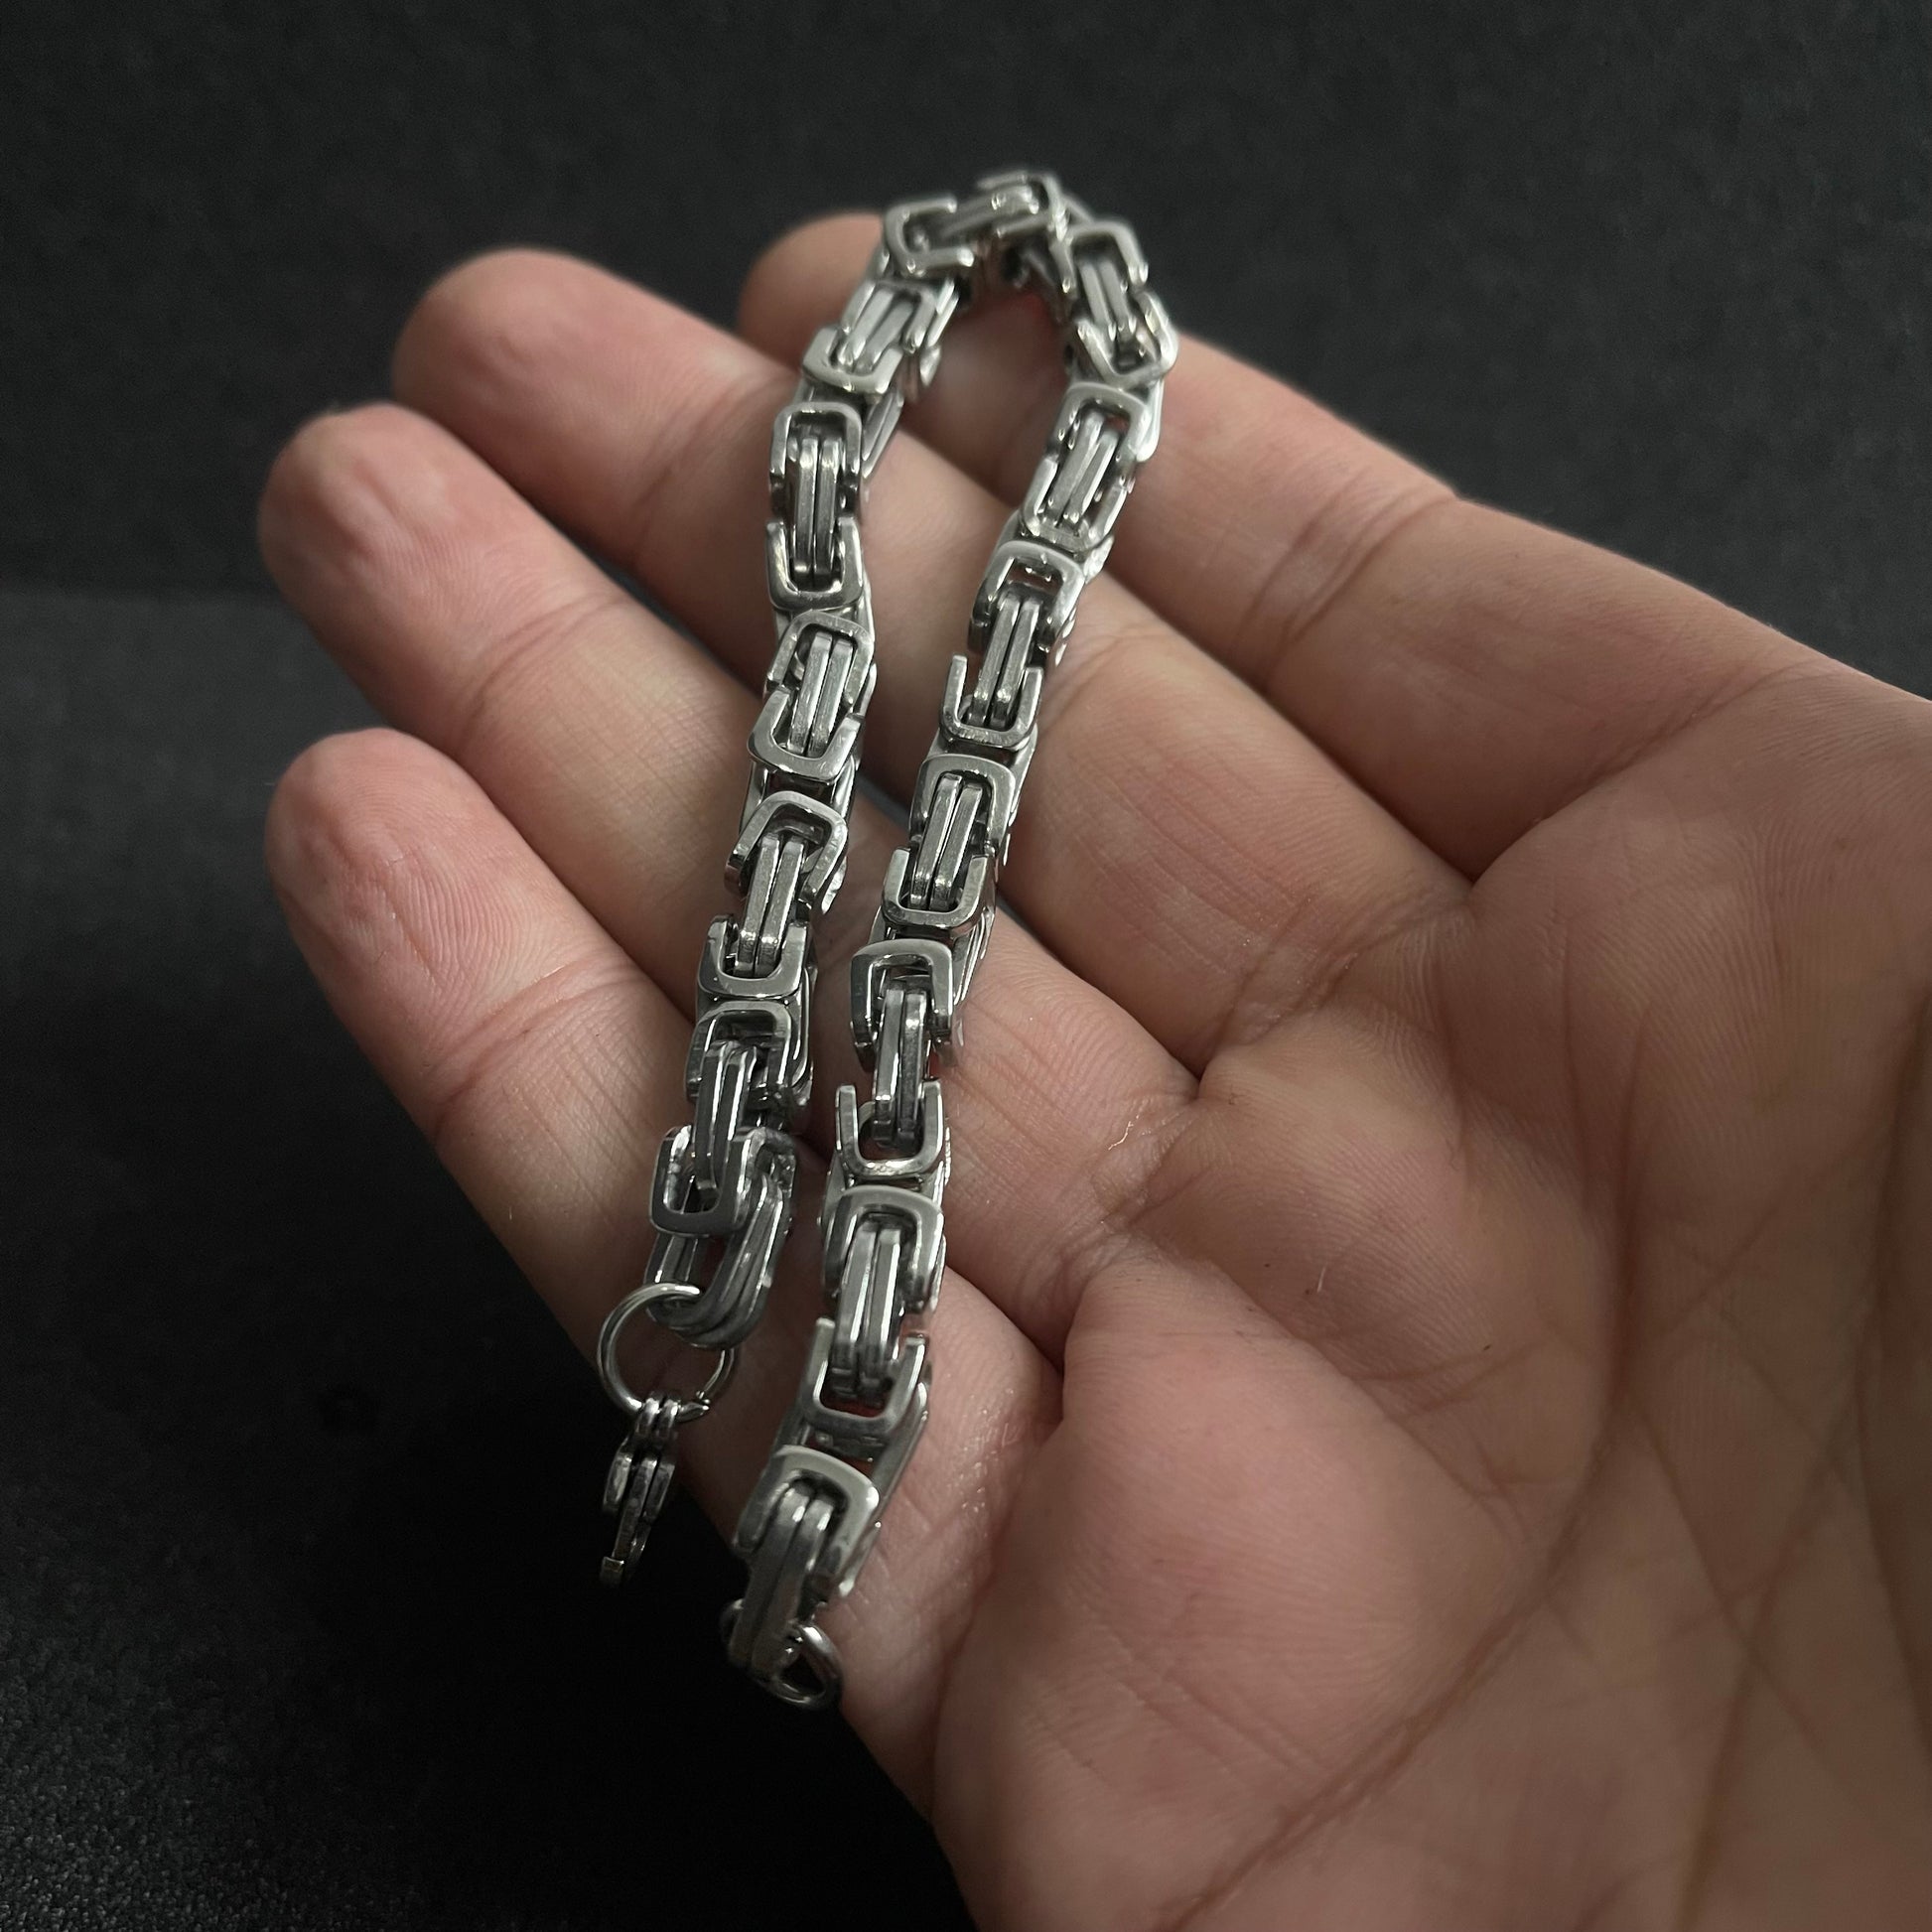 6mm silver stainless steel byzantine link chain bracelet for men online in pakistan